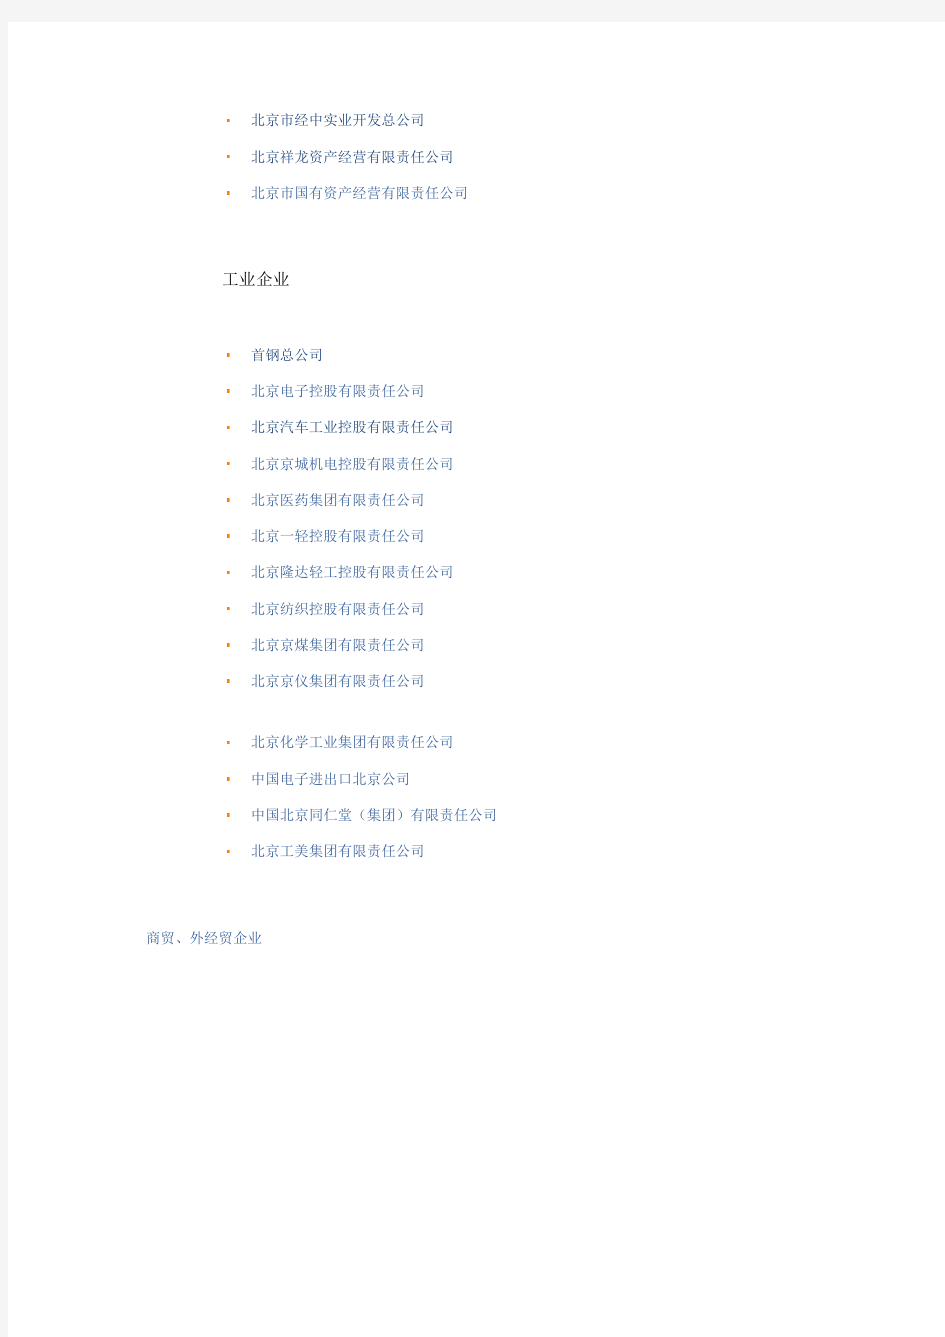 北京国资委下属企业名单